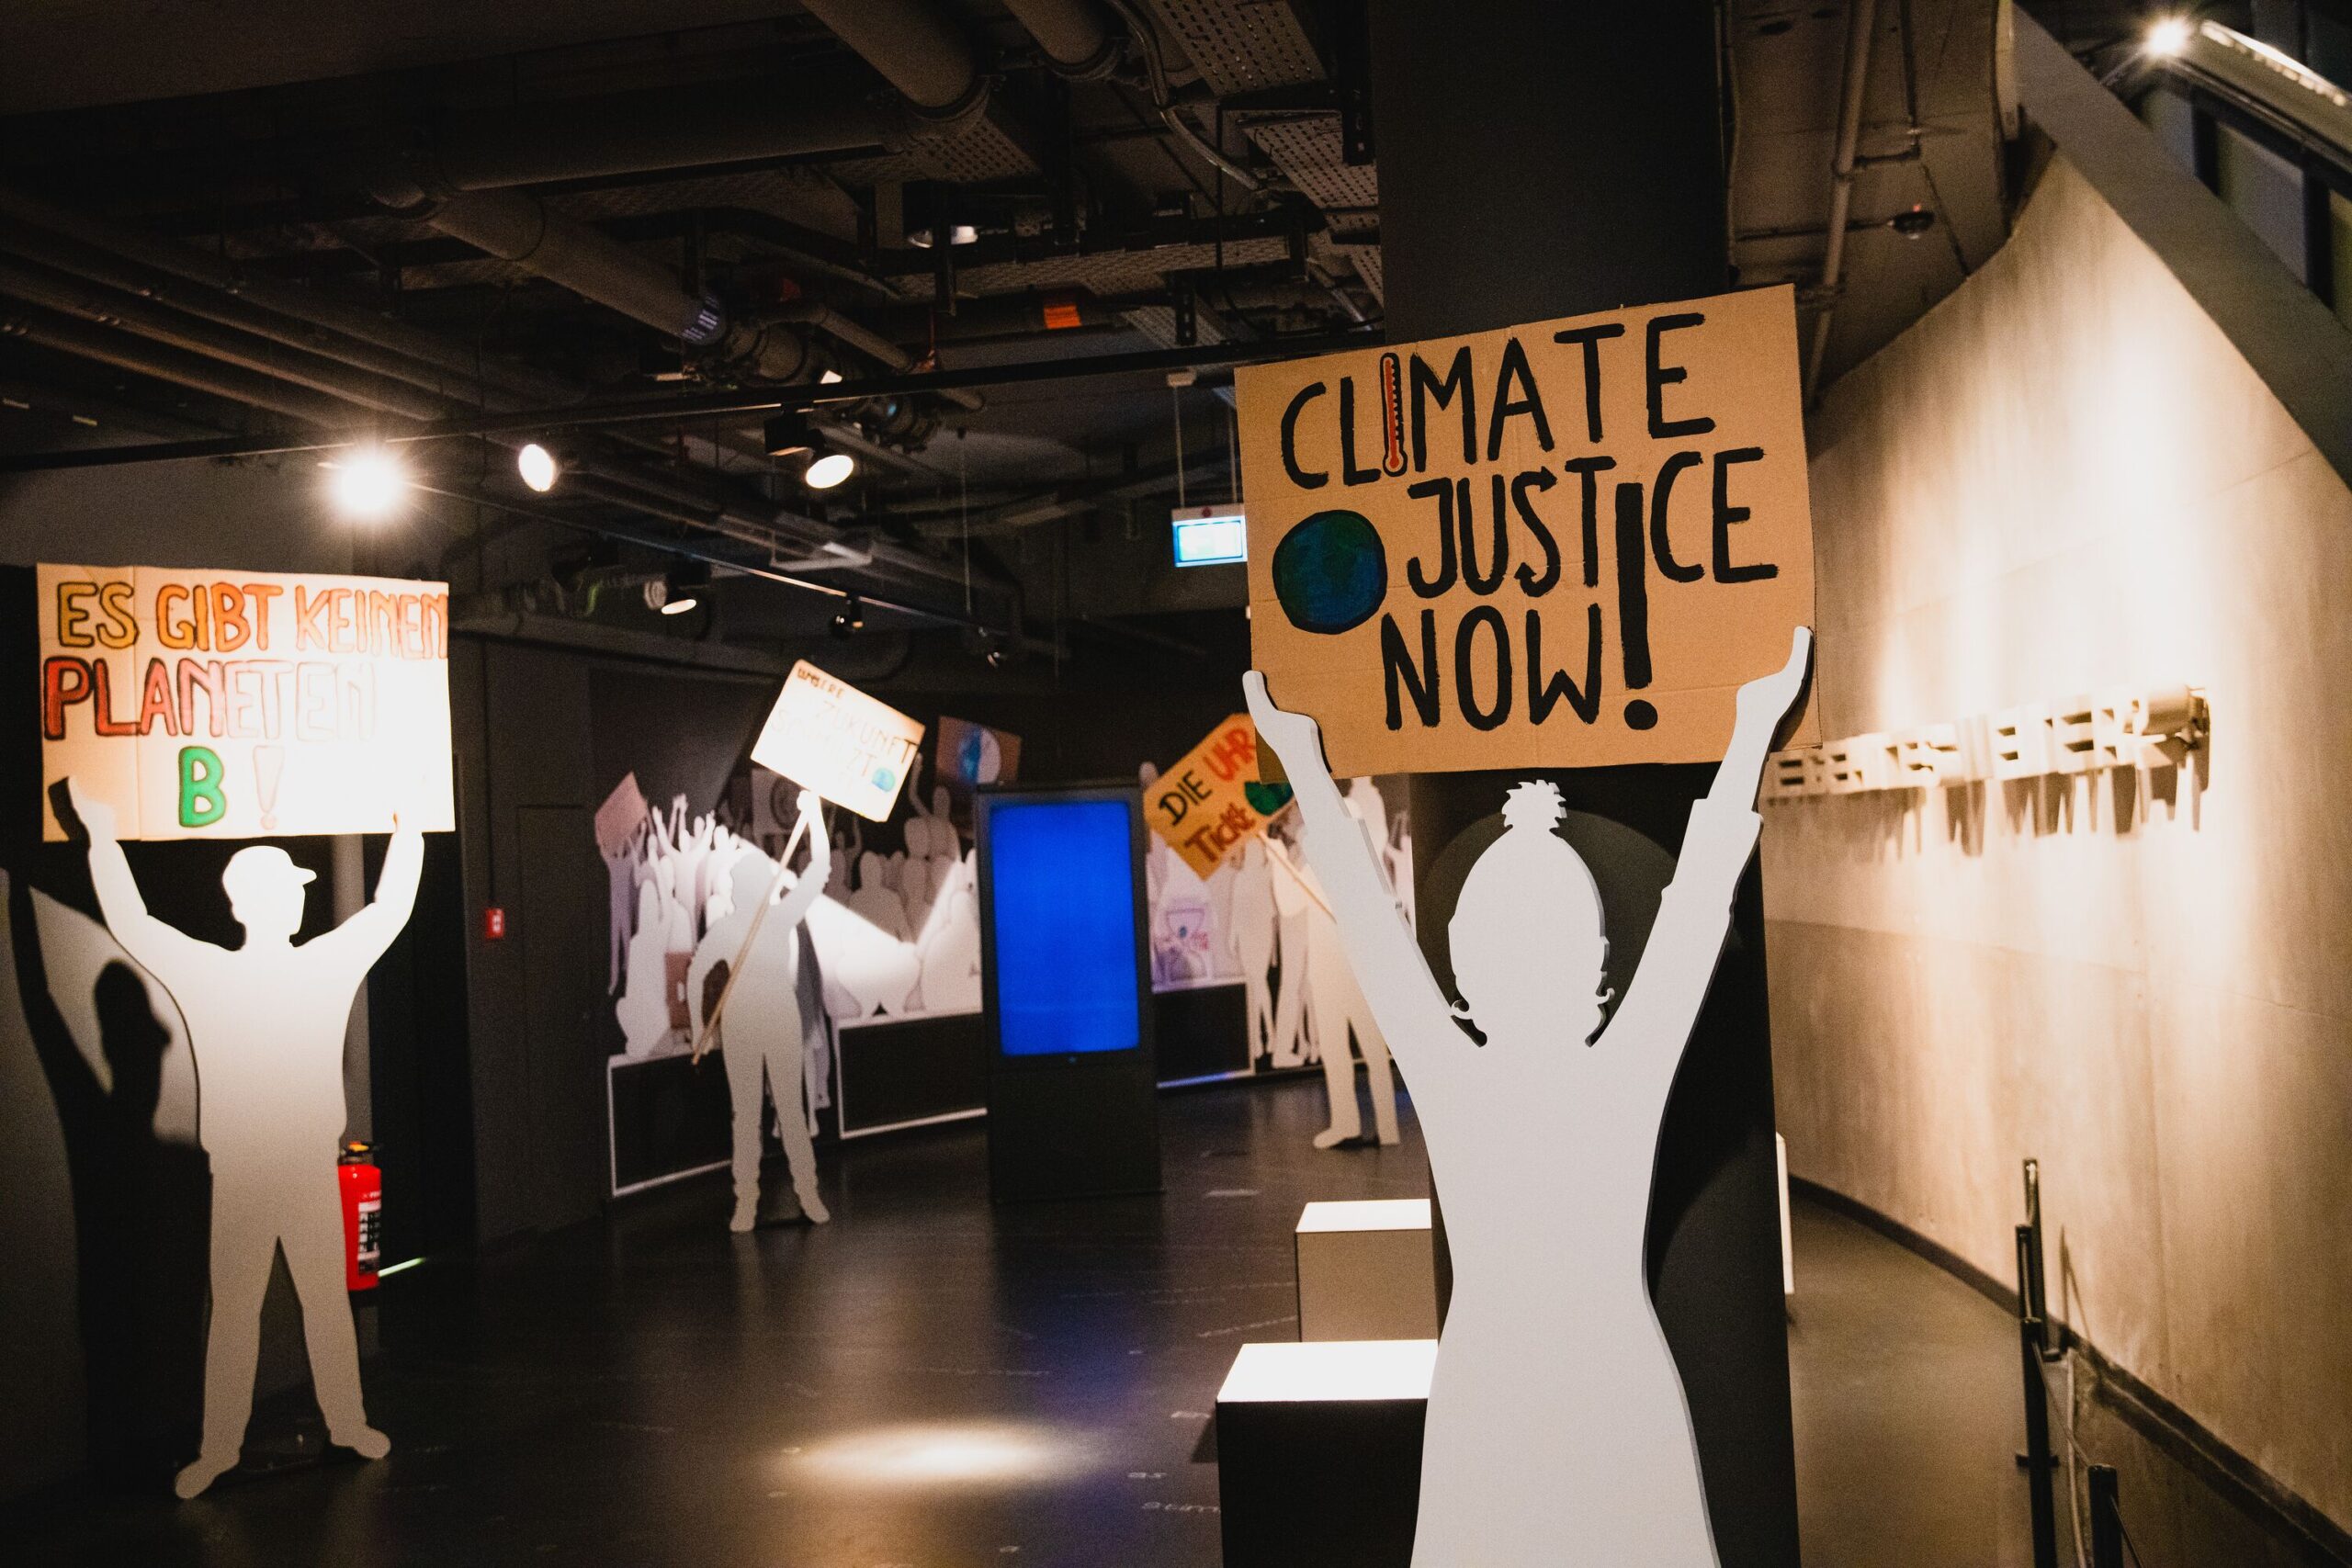 Transparente mit der Aufschrift Climate Justice Now! und Es gibt keinen Planet B